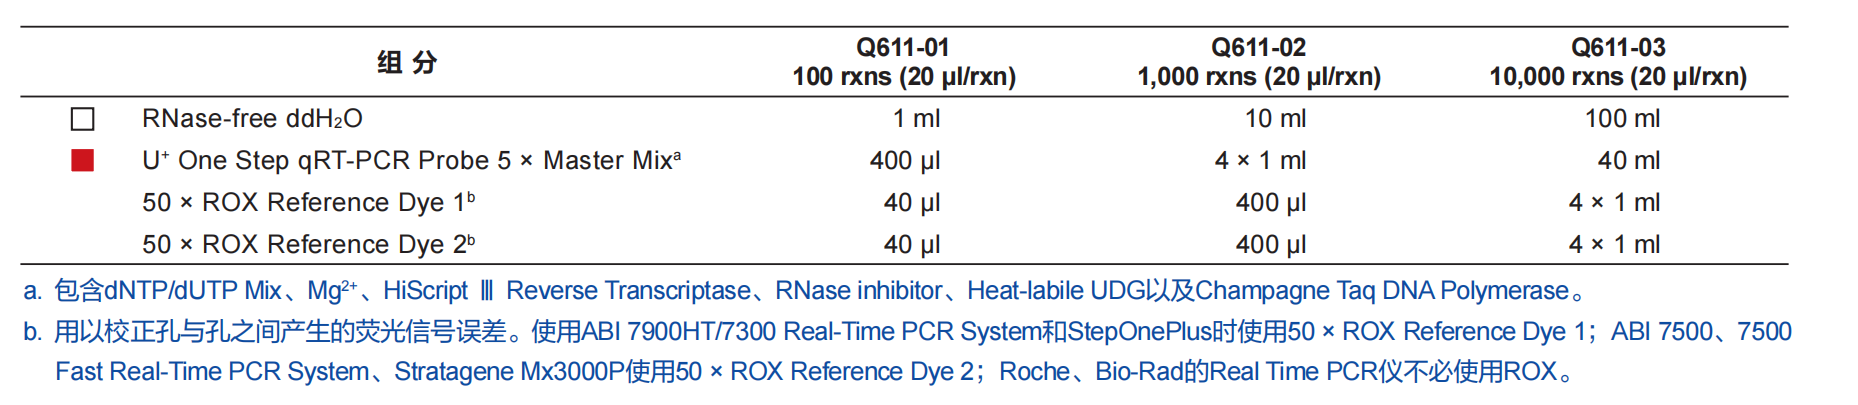 HiScript III U+ One Step qRT-PCR Probe 5 × Master Mix